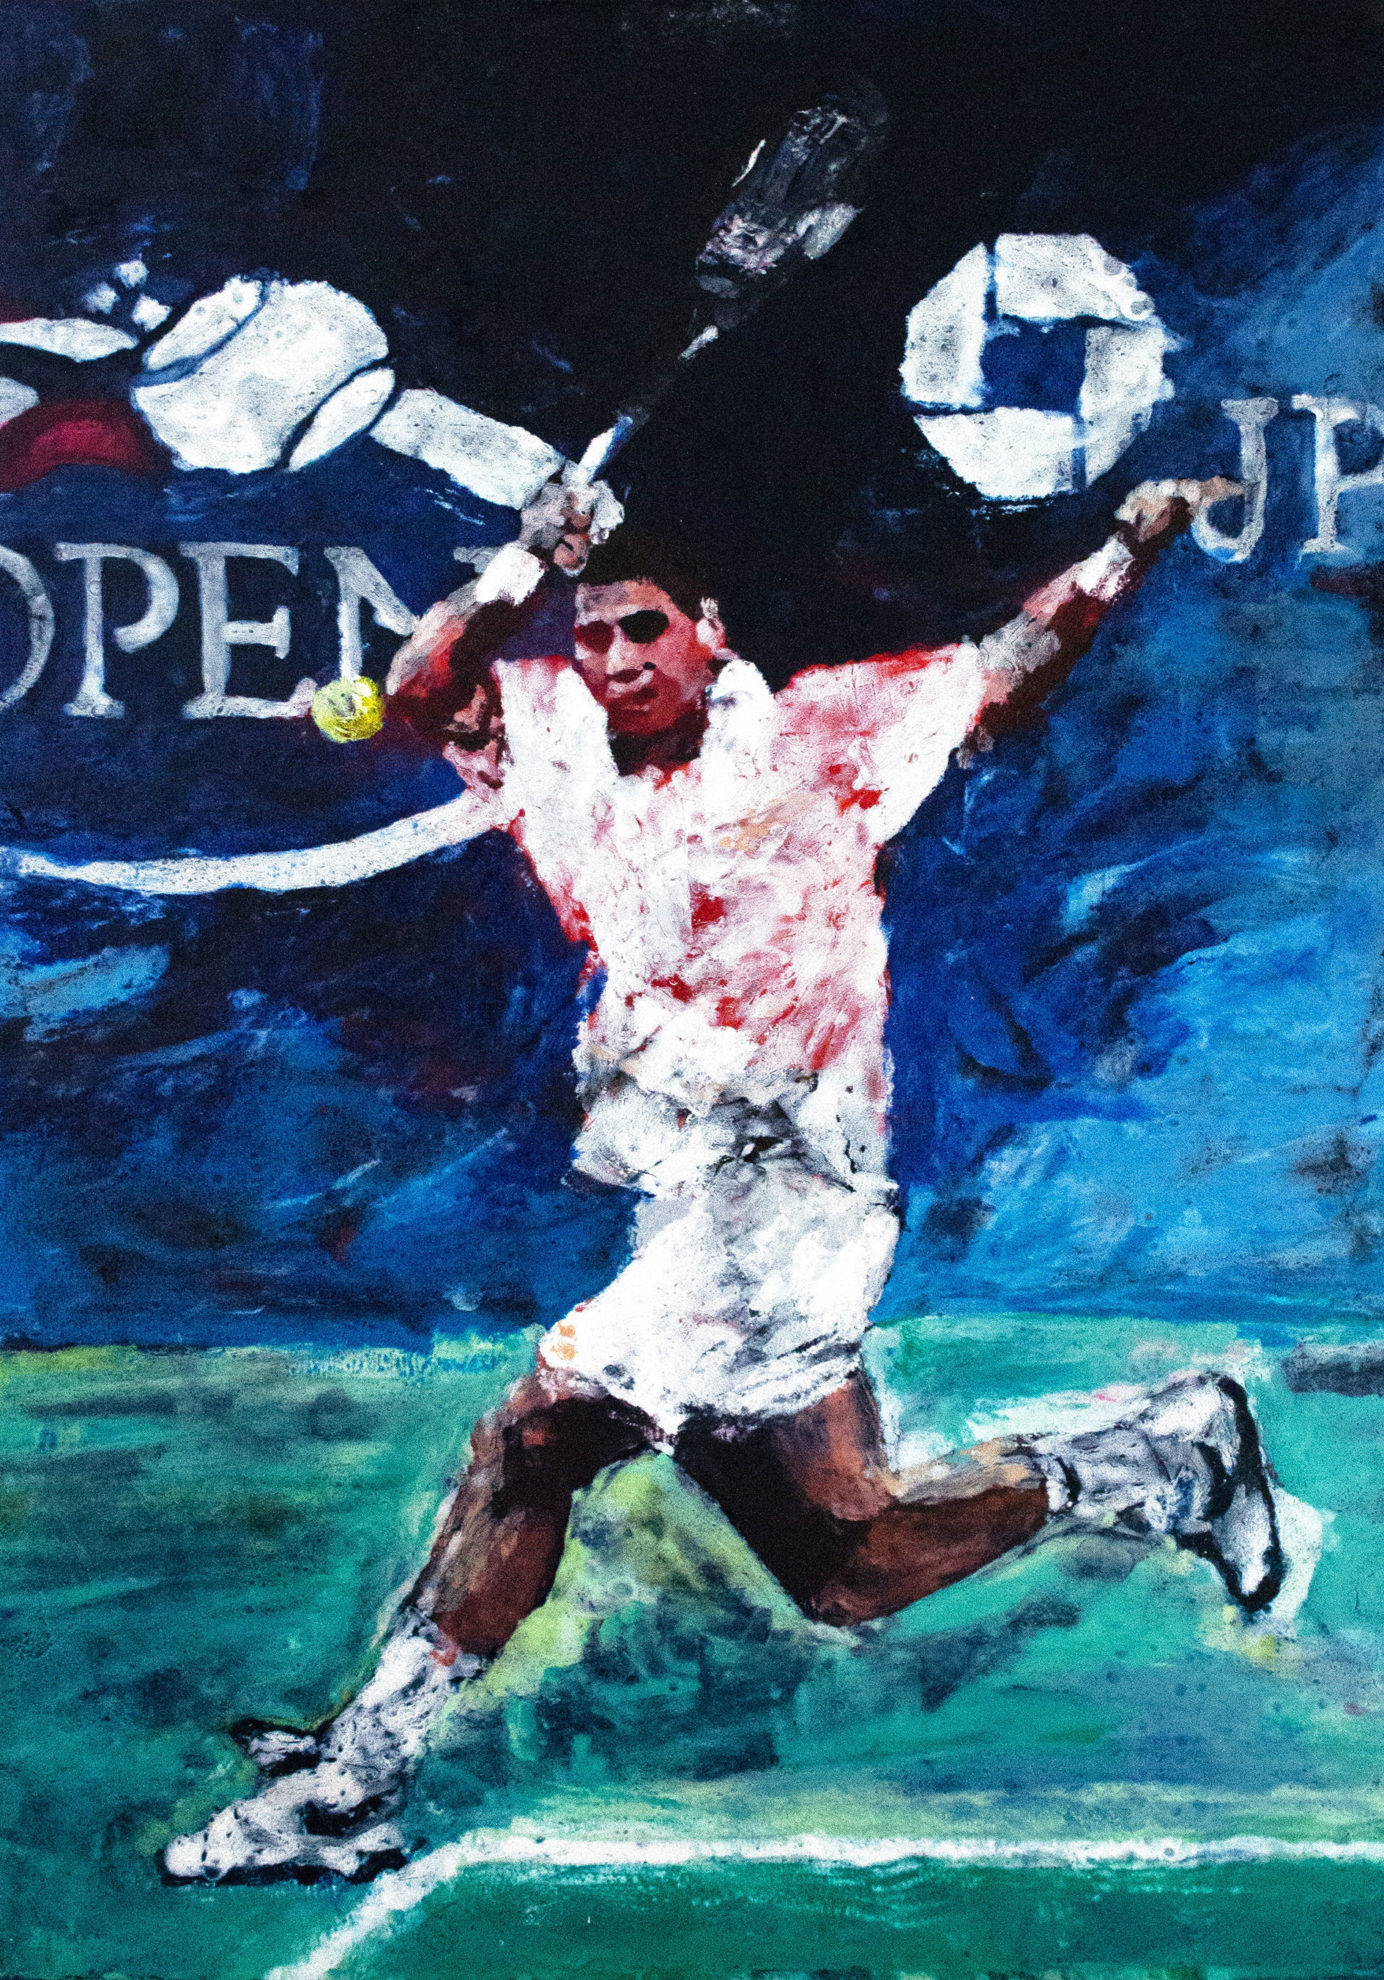 Pete Sampras, 2002 US Open Champion